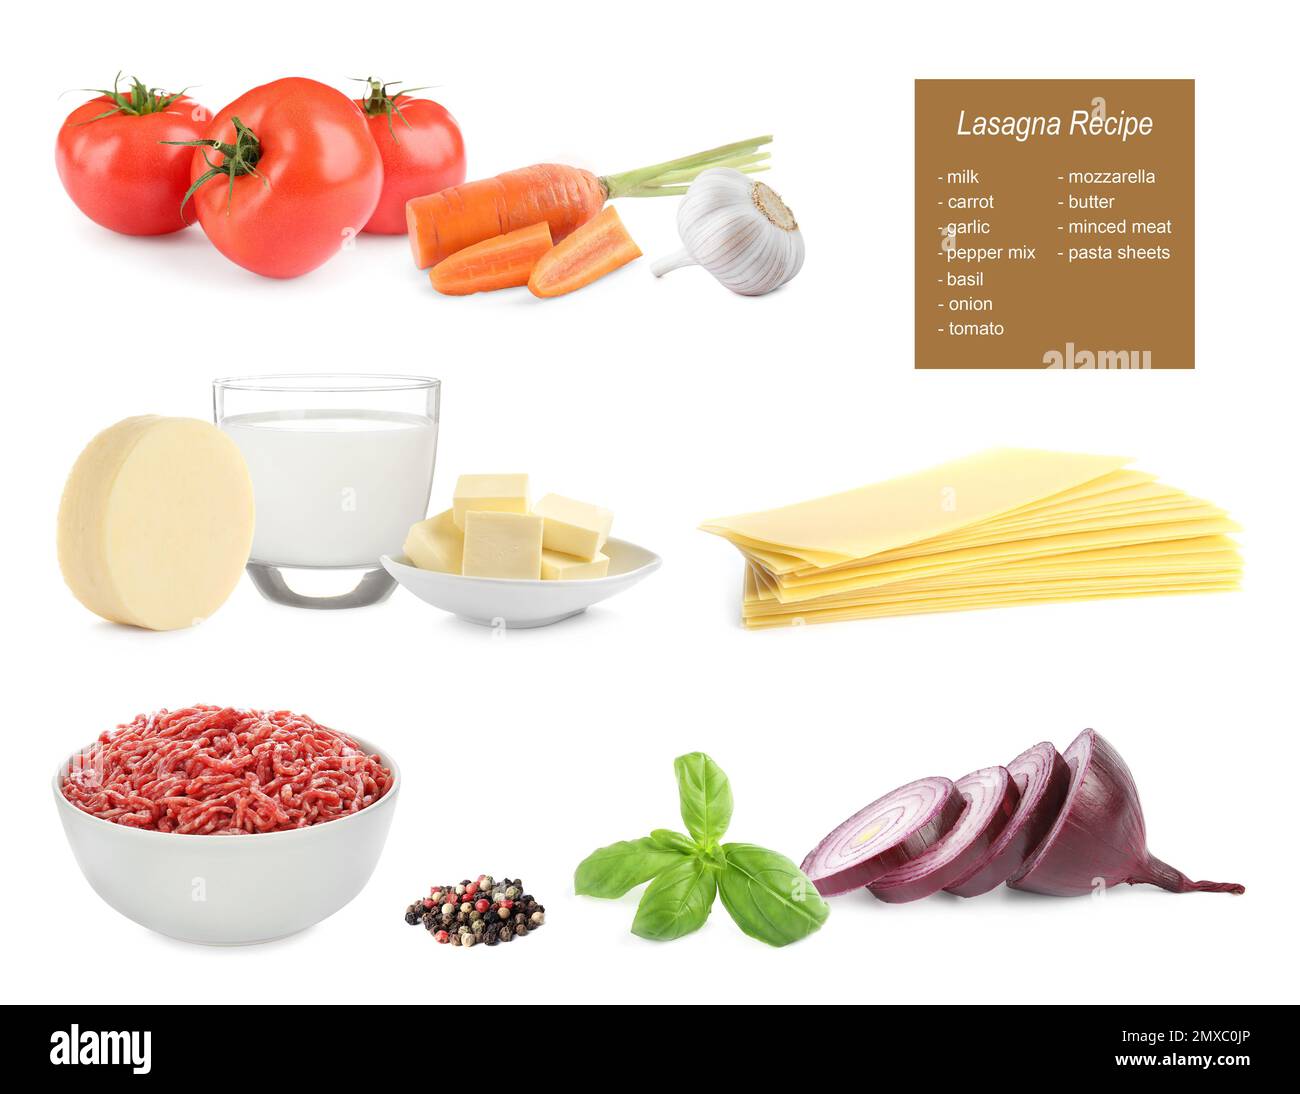 Mit verschiedenen Zutaten auf weißem Hintergrund. Lasagne Rezept Stockfoto